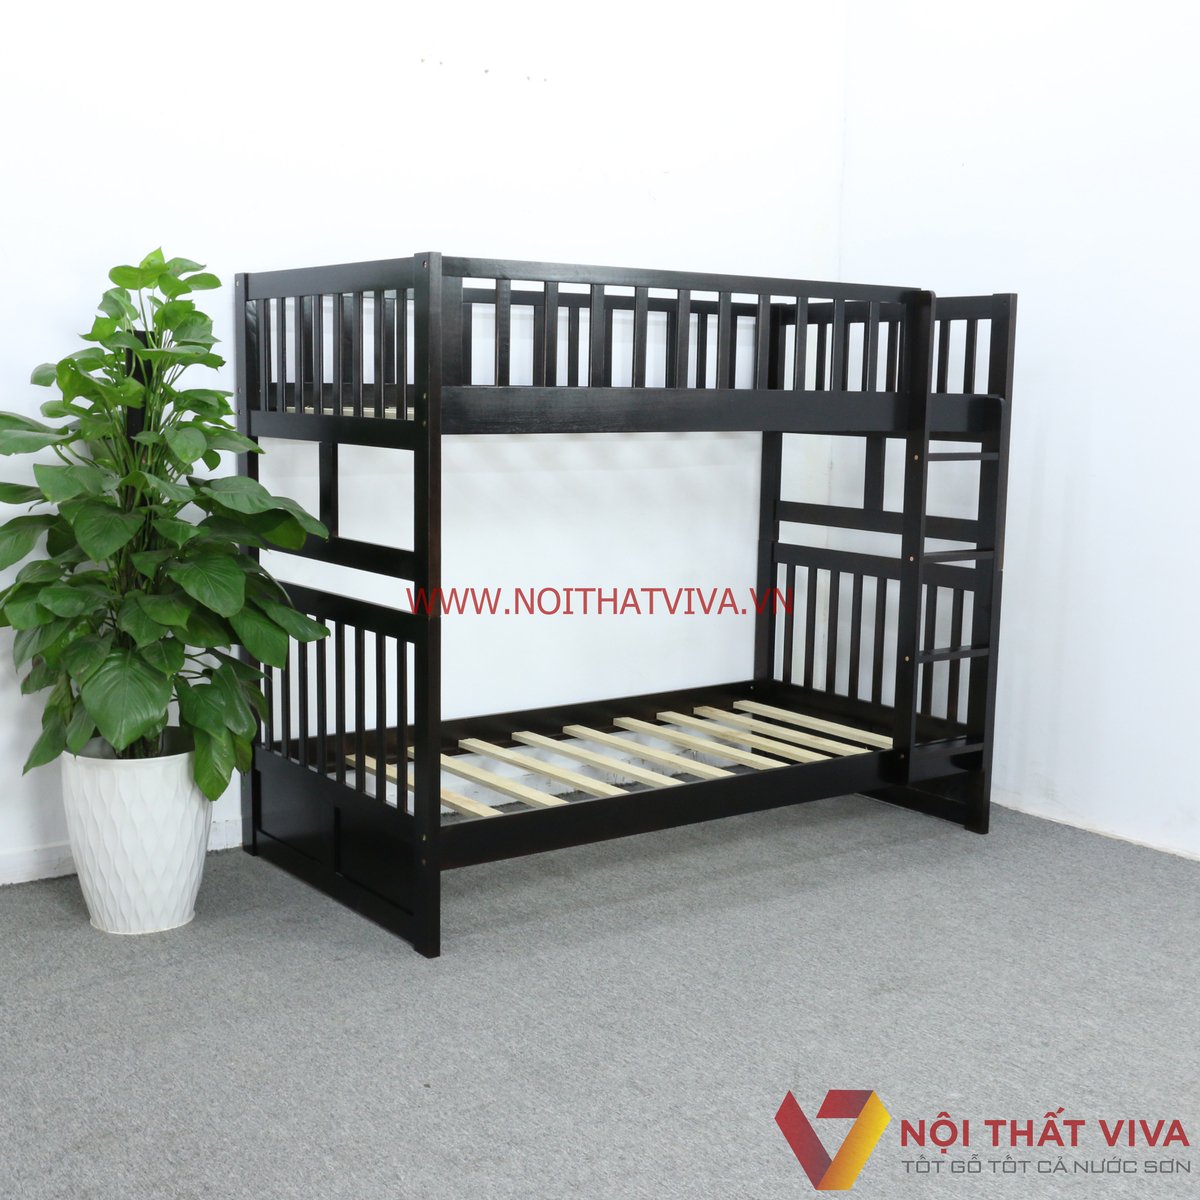 Mẫu giường tầng trẻ em gỗ tự nhiên đơn giản, dễ sử dụng, phù hợp nhiều không gian.